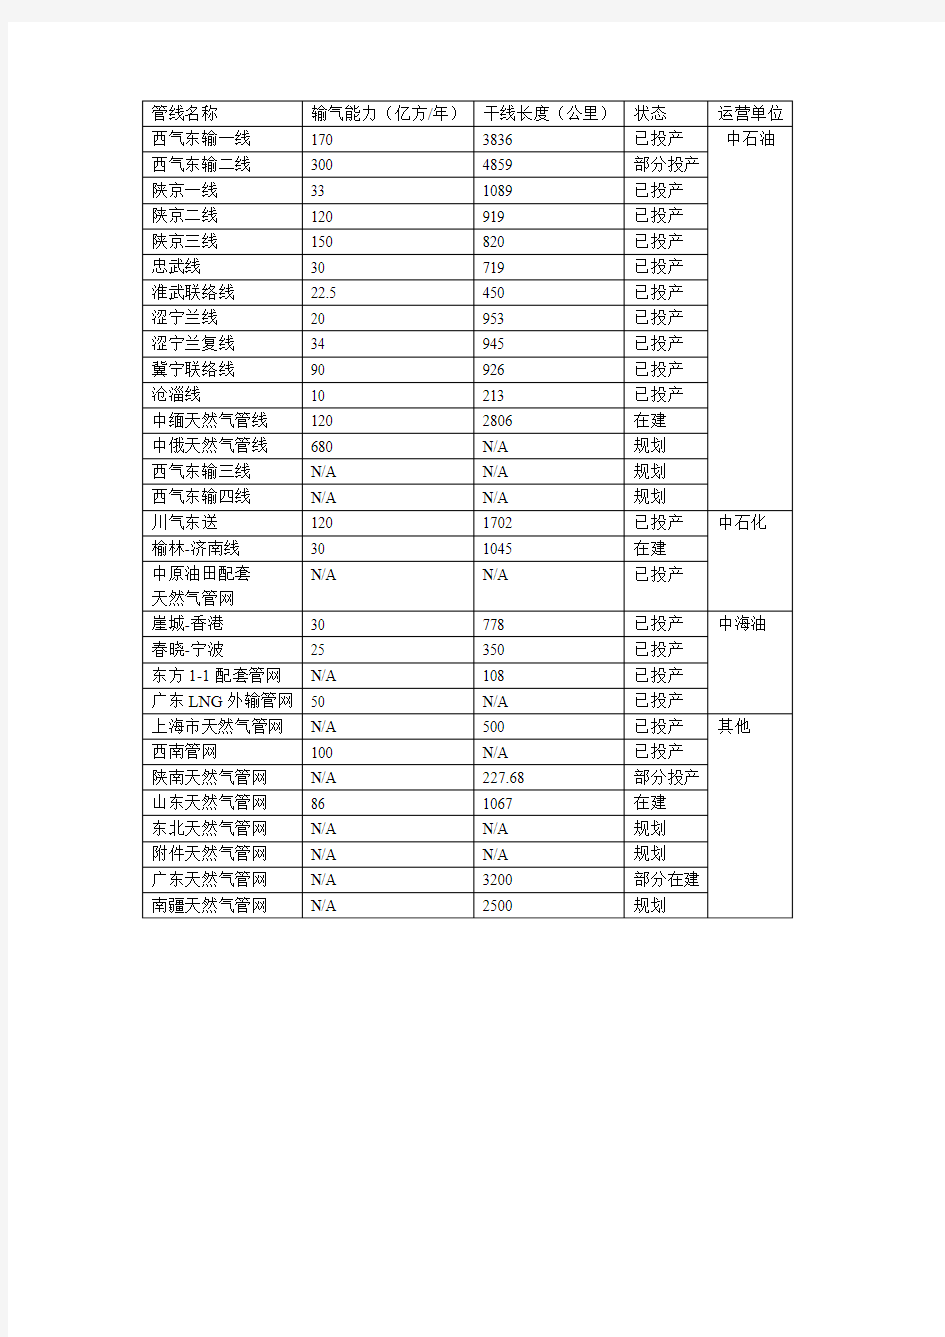 中国主要天然气管道一览表